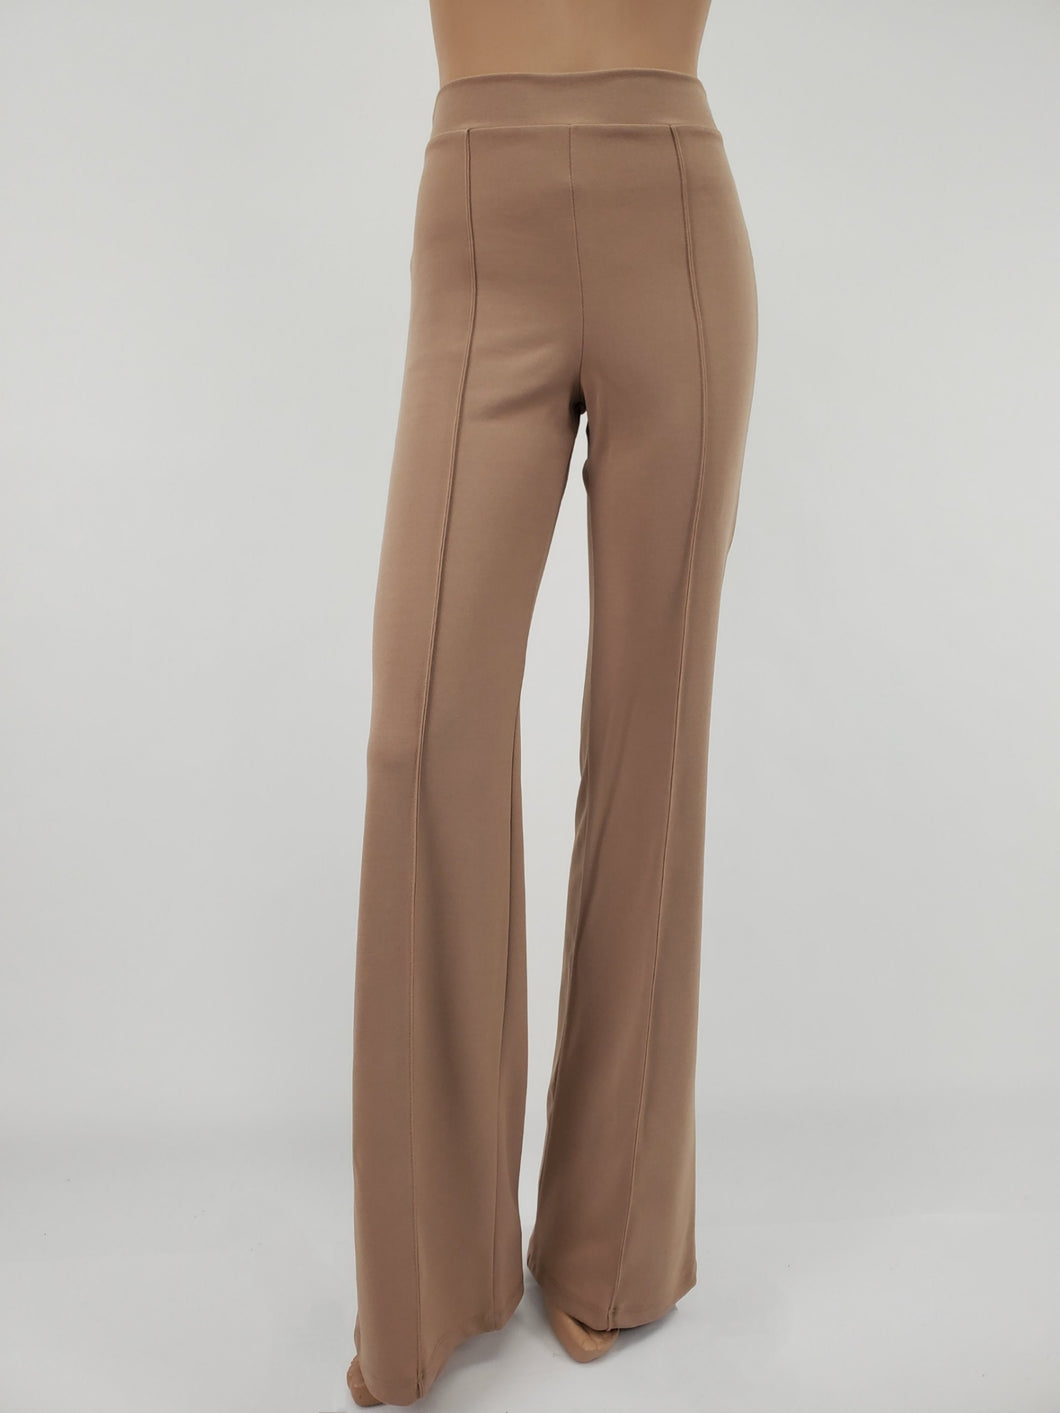 High Waist Front Pintuck Pants with Zipper (Tan)